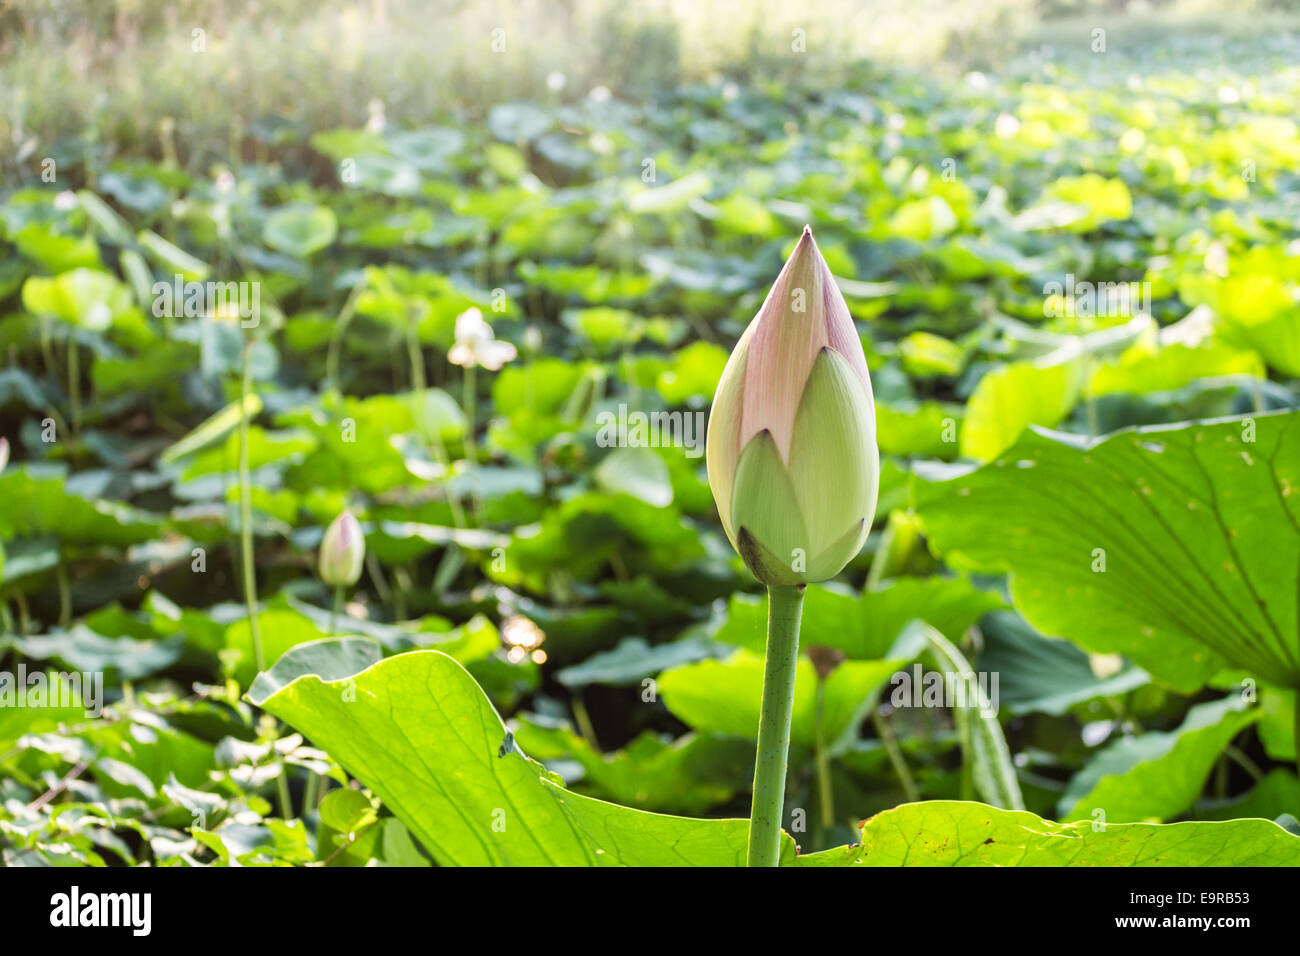 Le parc naturel 'Parco del loto' Lotus zone verte en Italie : un grand étang où les fleurs de lotus (Nelumbo nucifera) et des nénuphars croître librement la création d'un bel environnement naturel. Banque D'Images